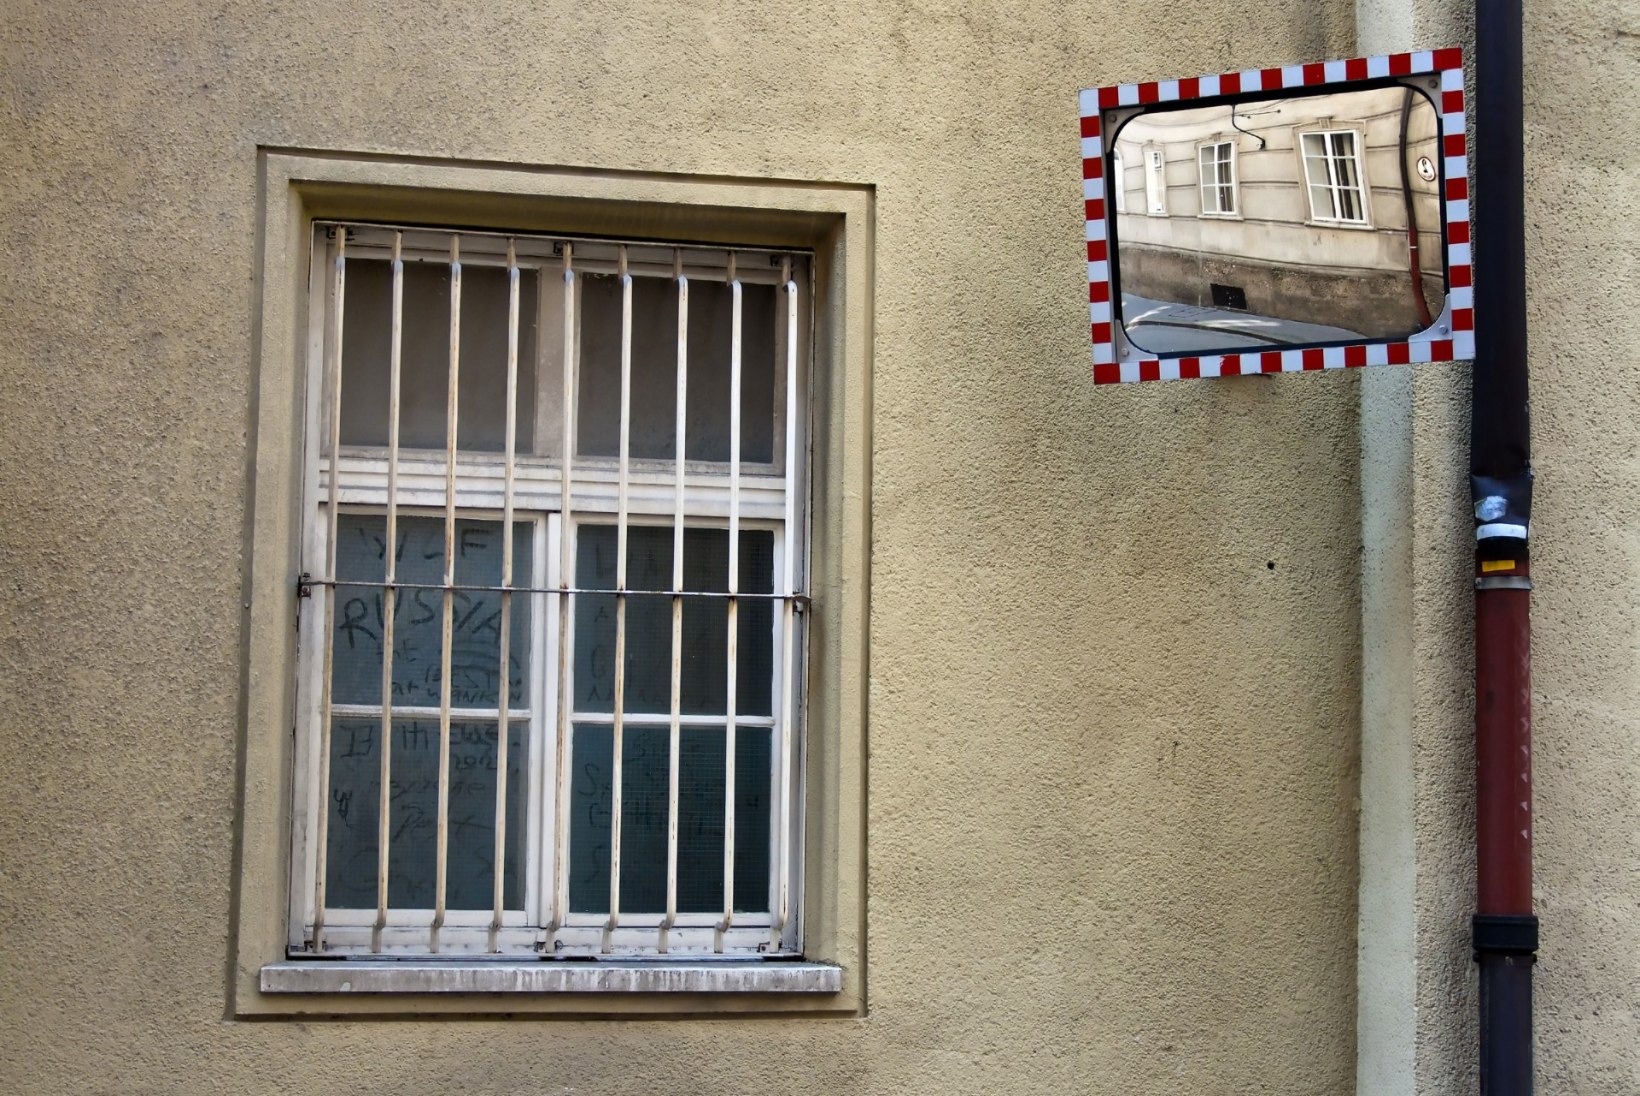 Ei takista trellid, ei takista kong: vang kogus petuskeemi abil 30 000 eurot